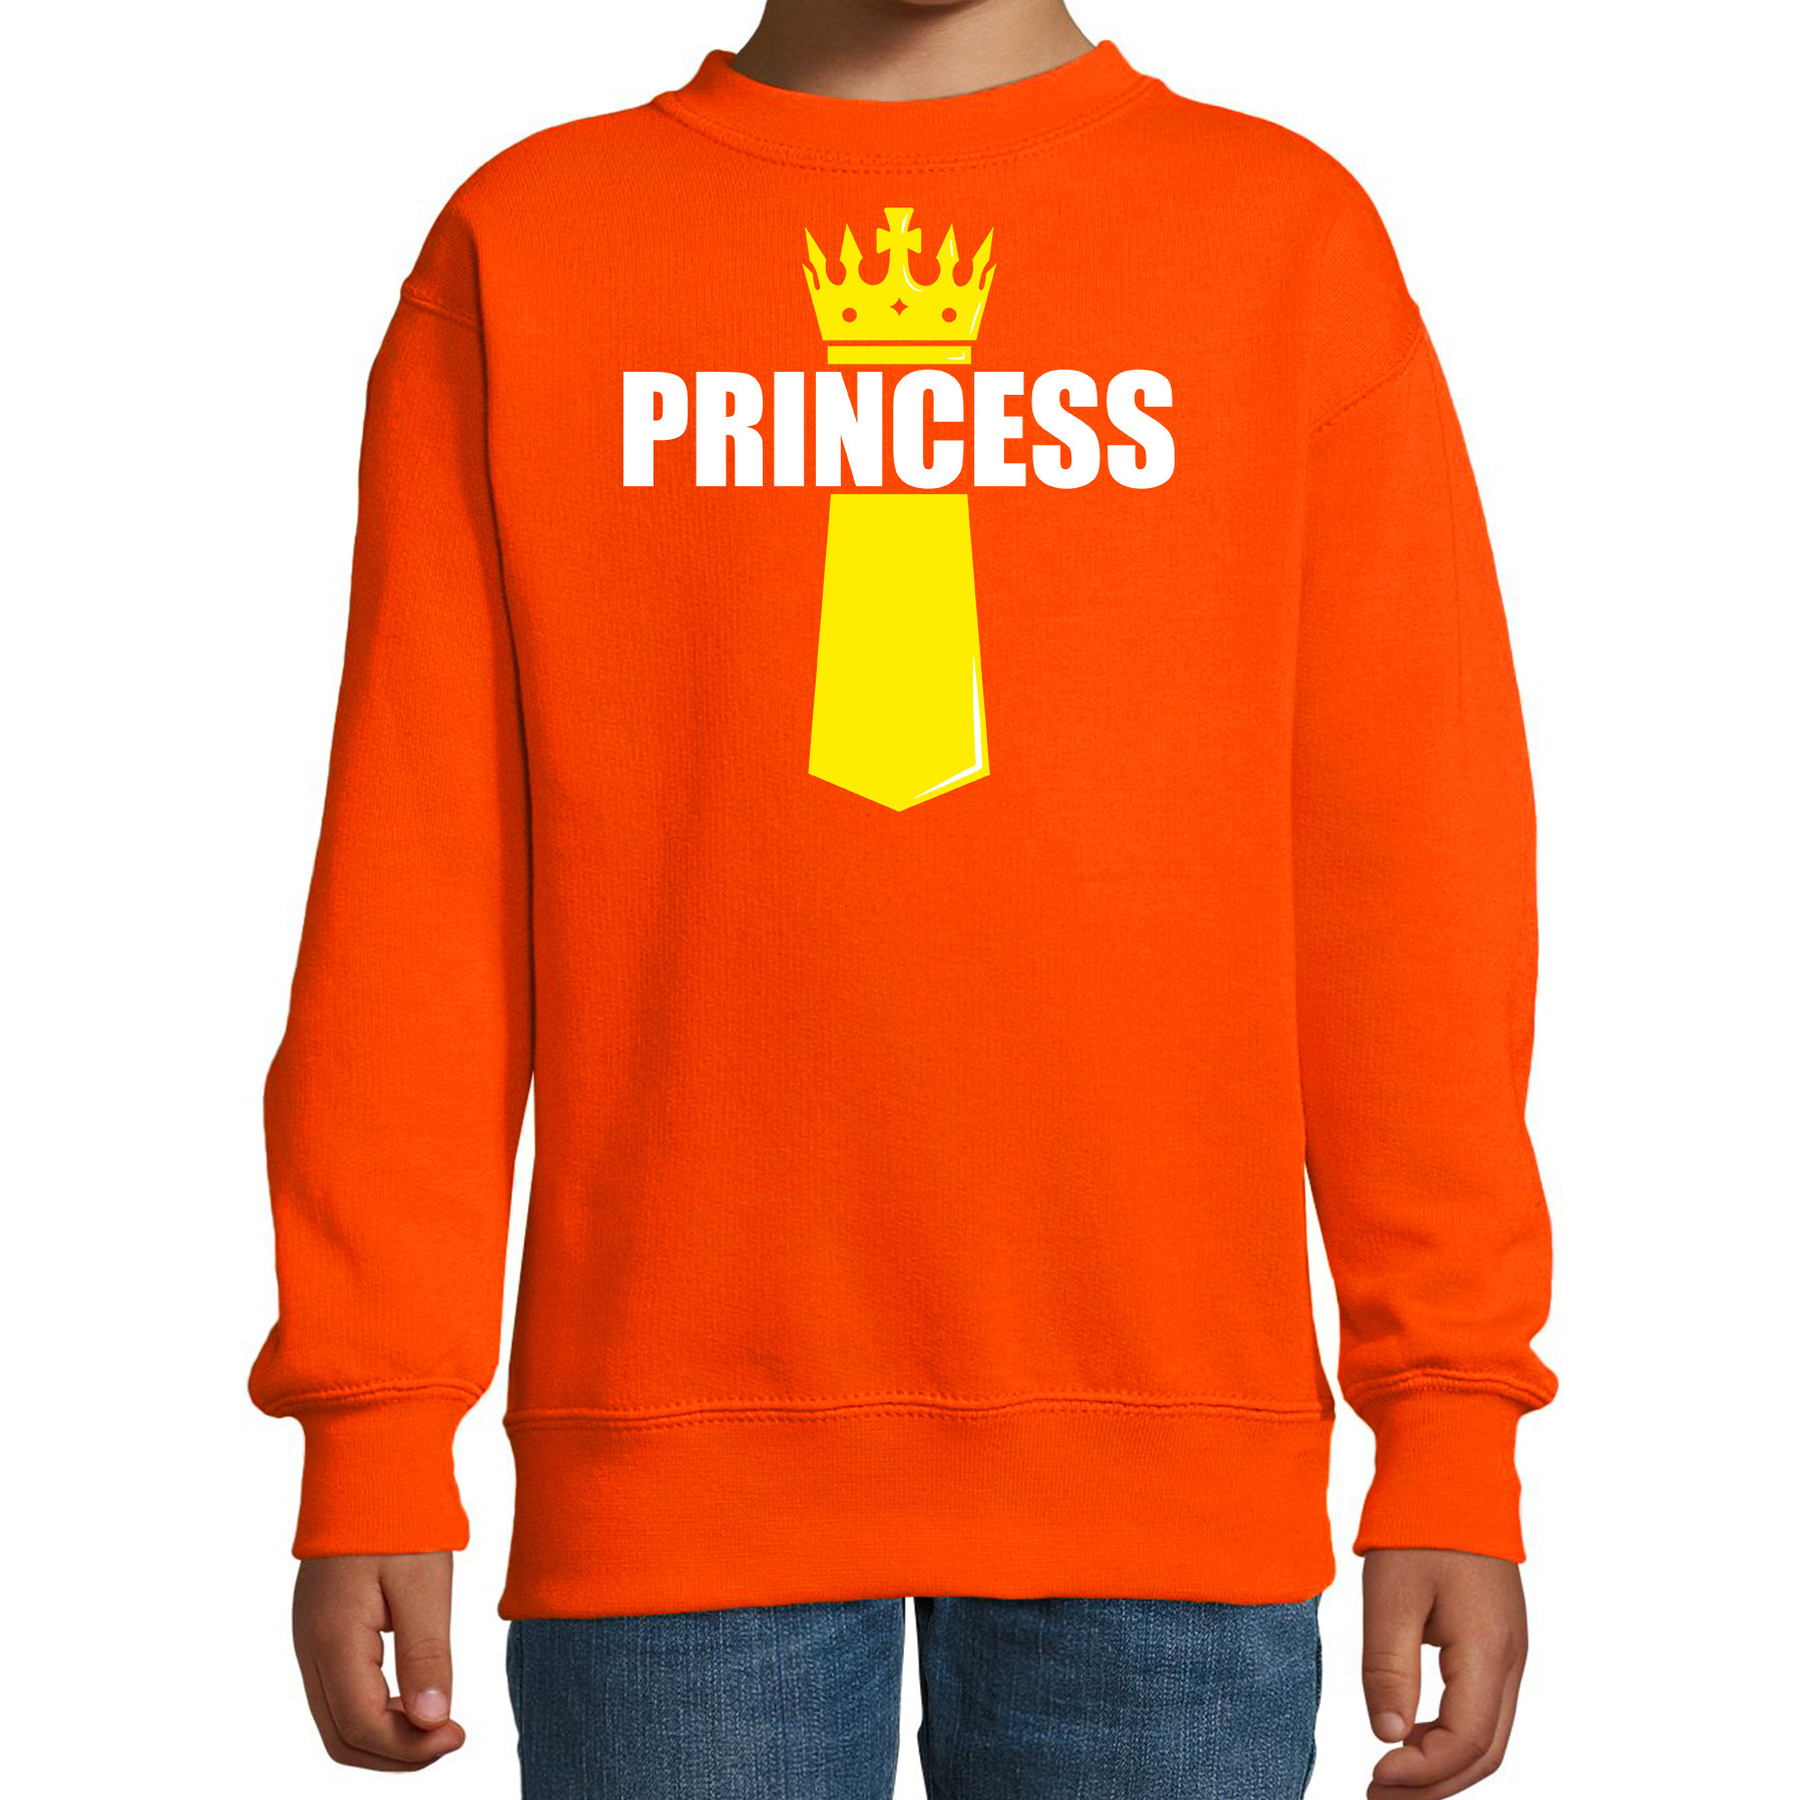 Koningsdag sweater - trui Princess met kroontje oranje voor kinderen